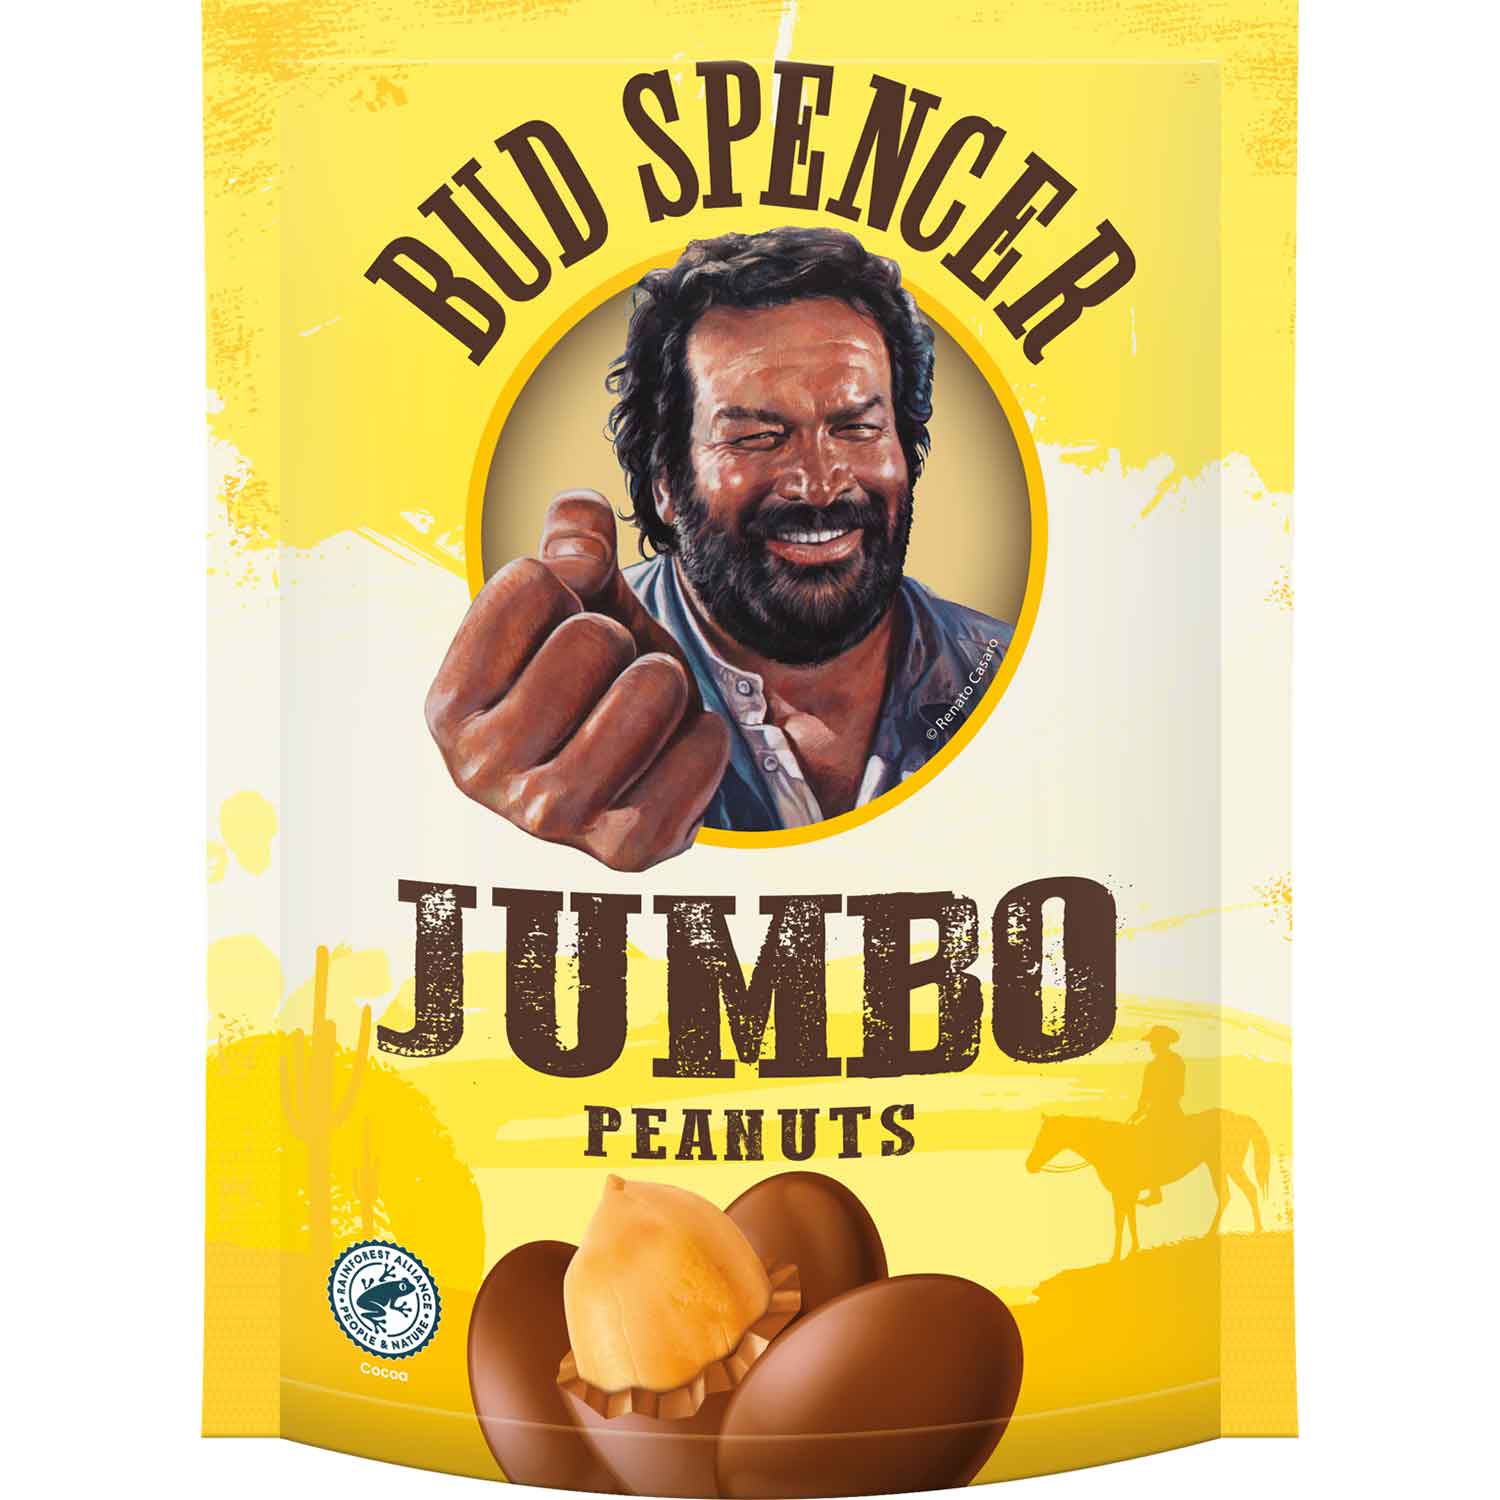 Bud Spencer - Jumbo Peanuts